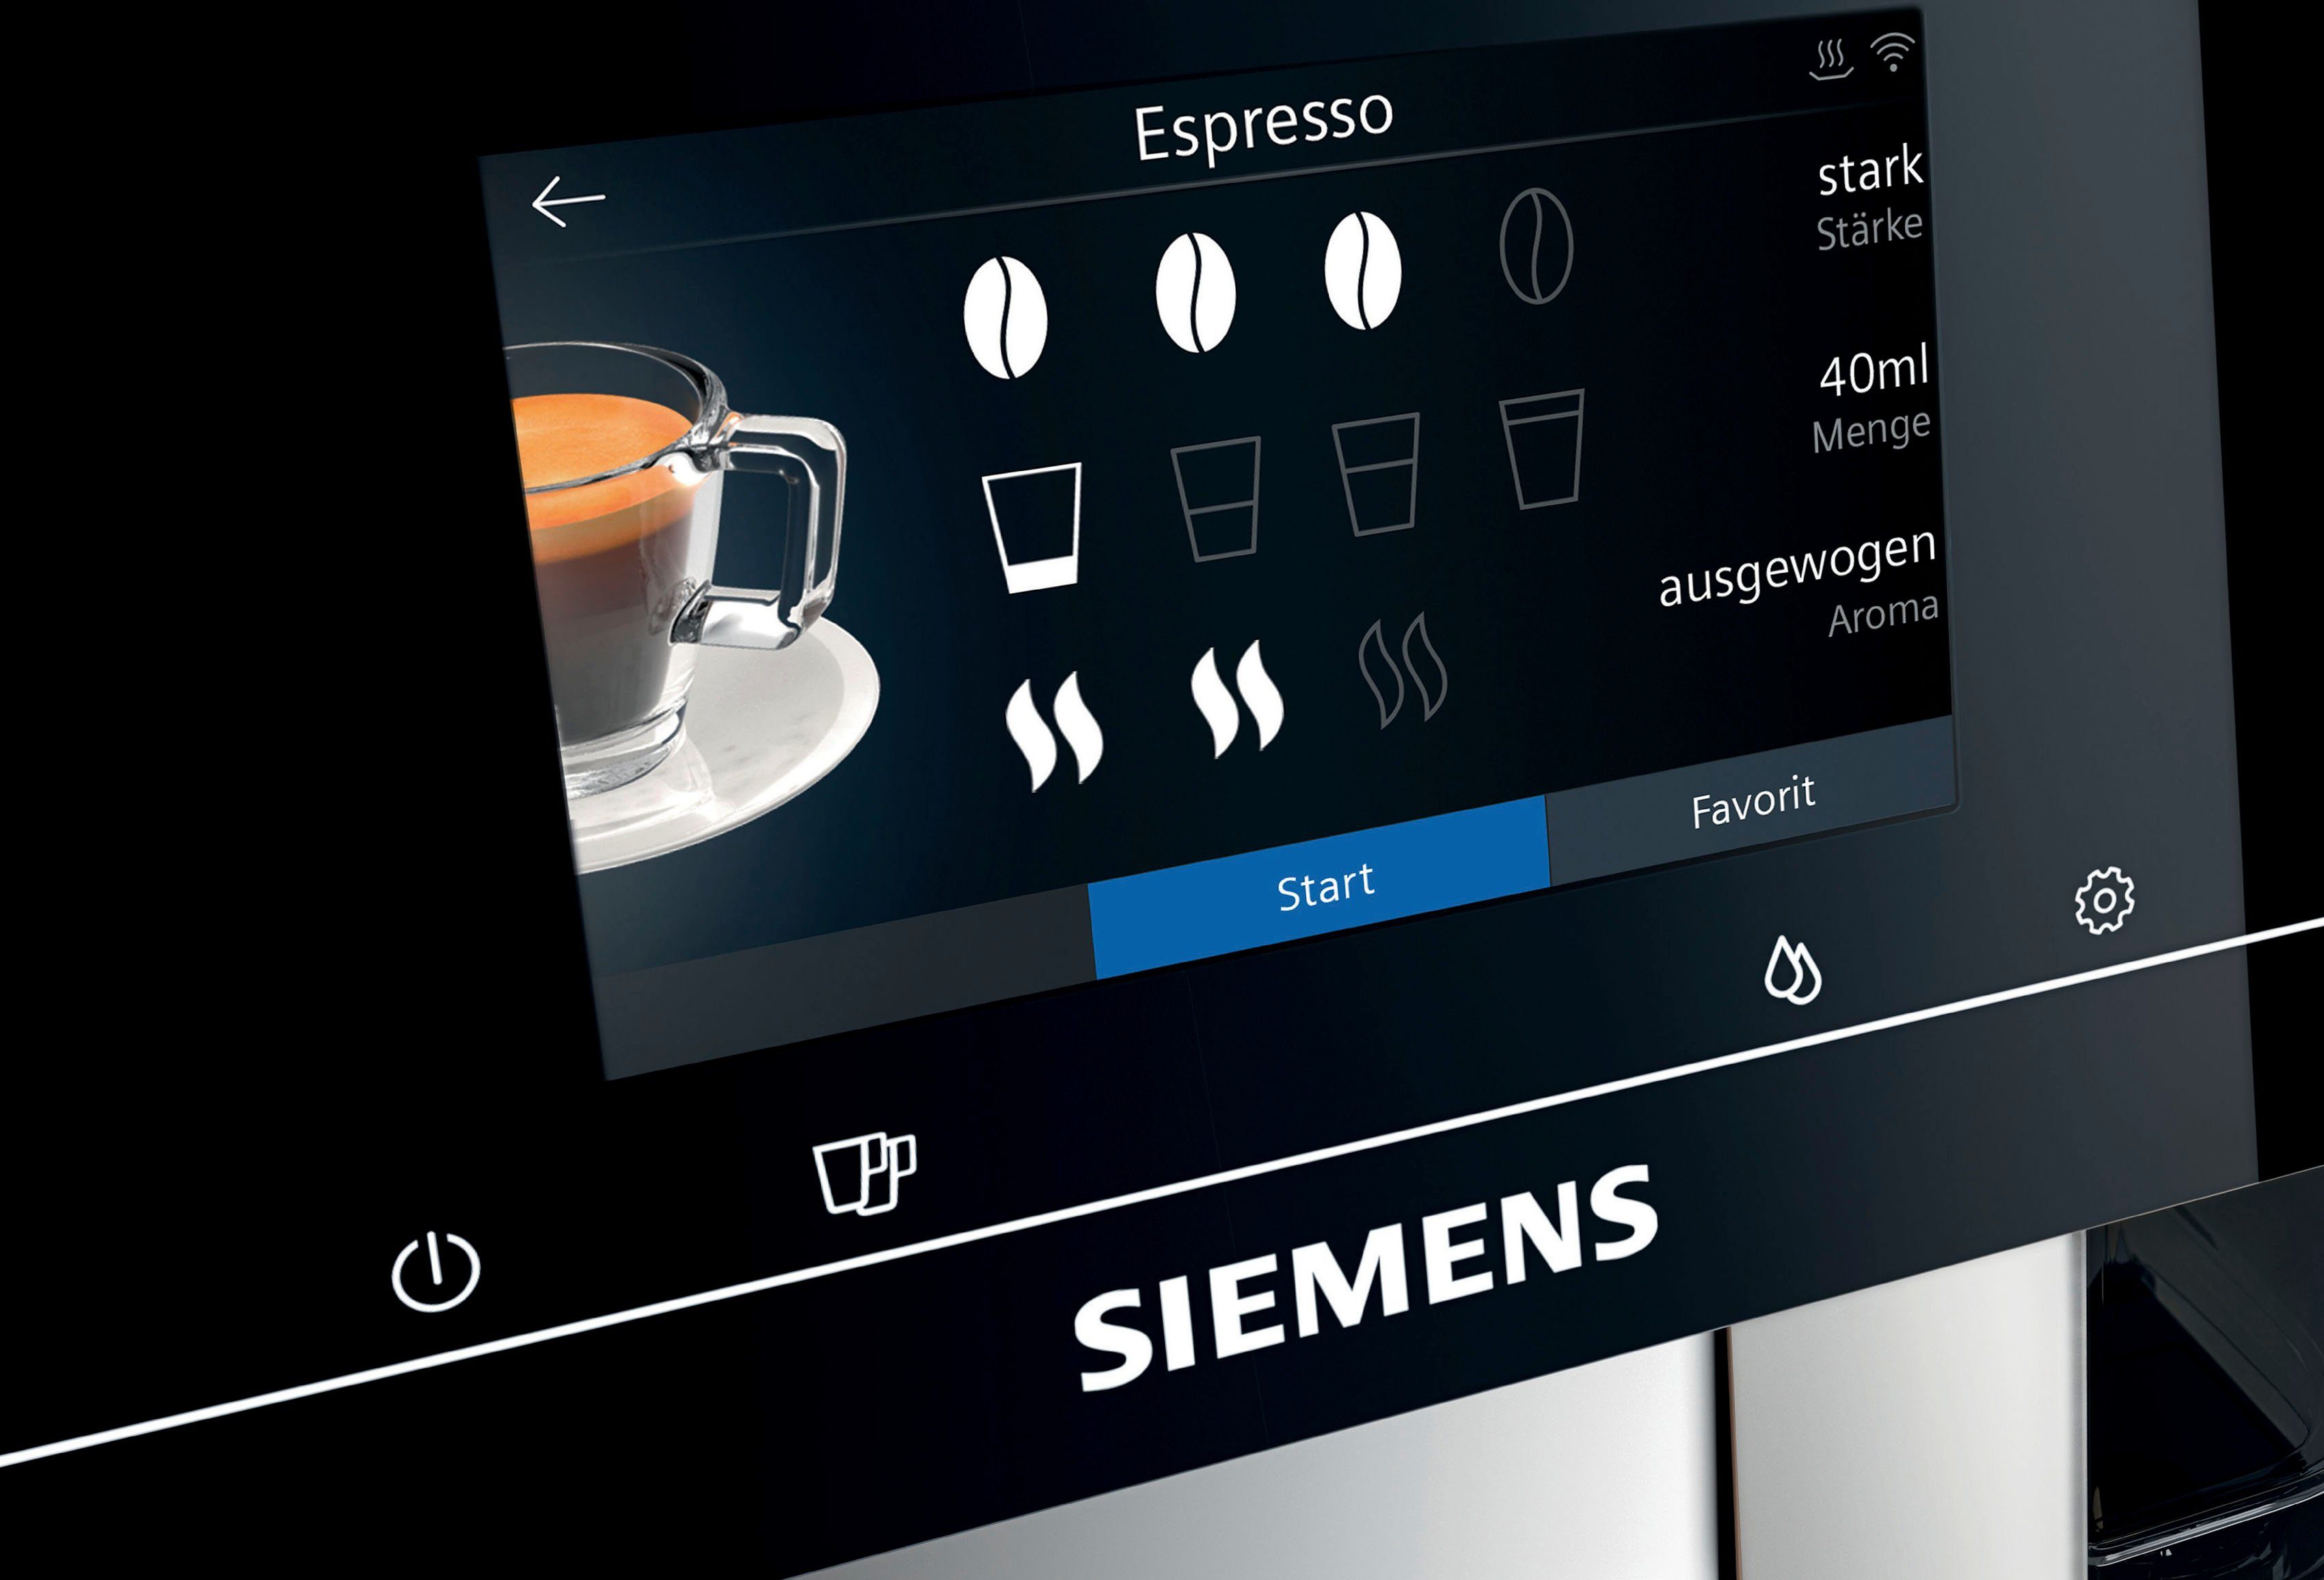 SIEMENS Kaffeevollautomat EQ.700 Inox silber metallic 10 Milchsystem-Reinigung TP705D47, Full-Touch-Display, Profile bis speicherbar